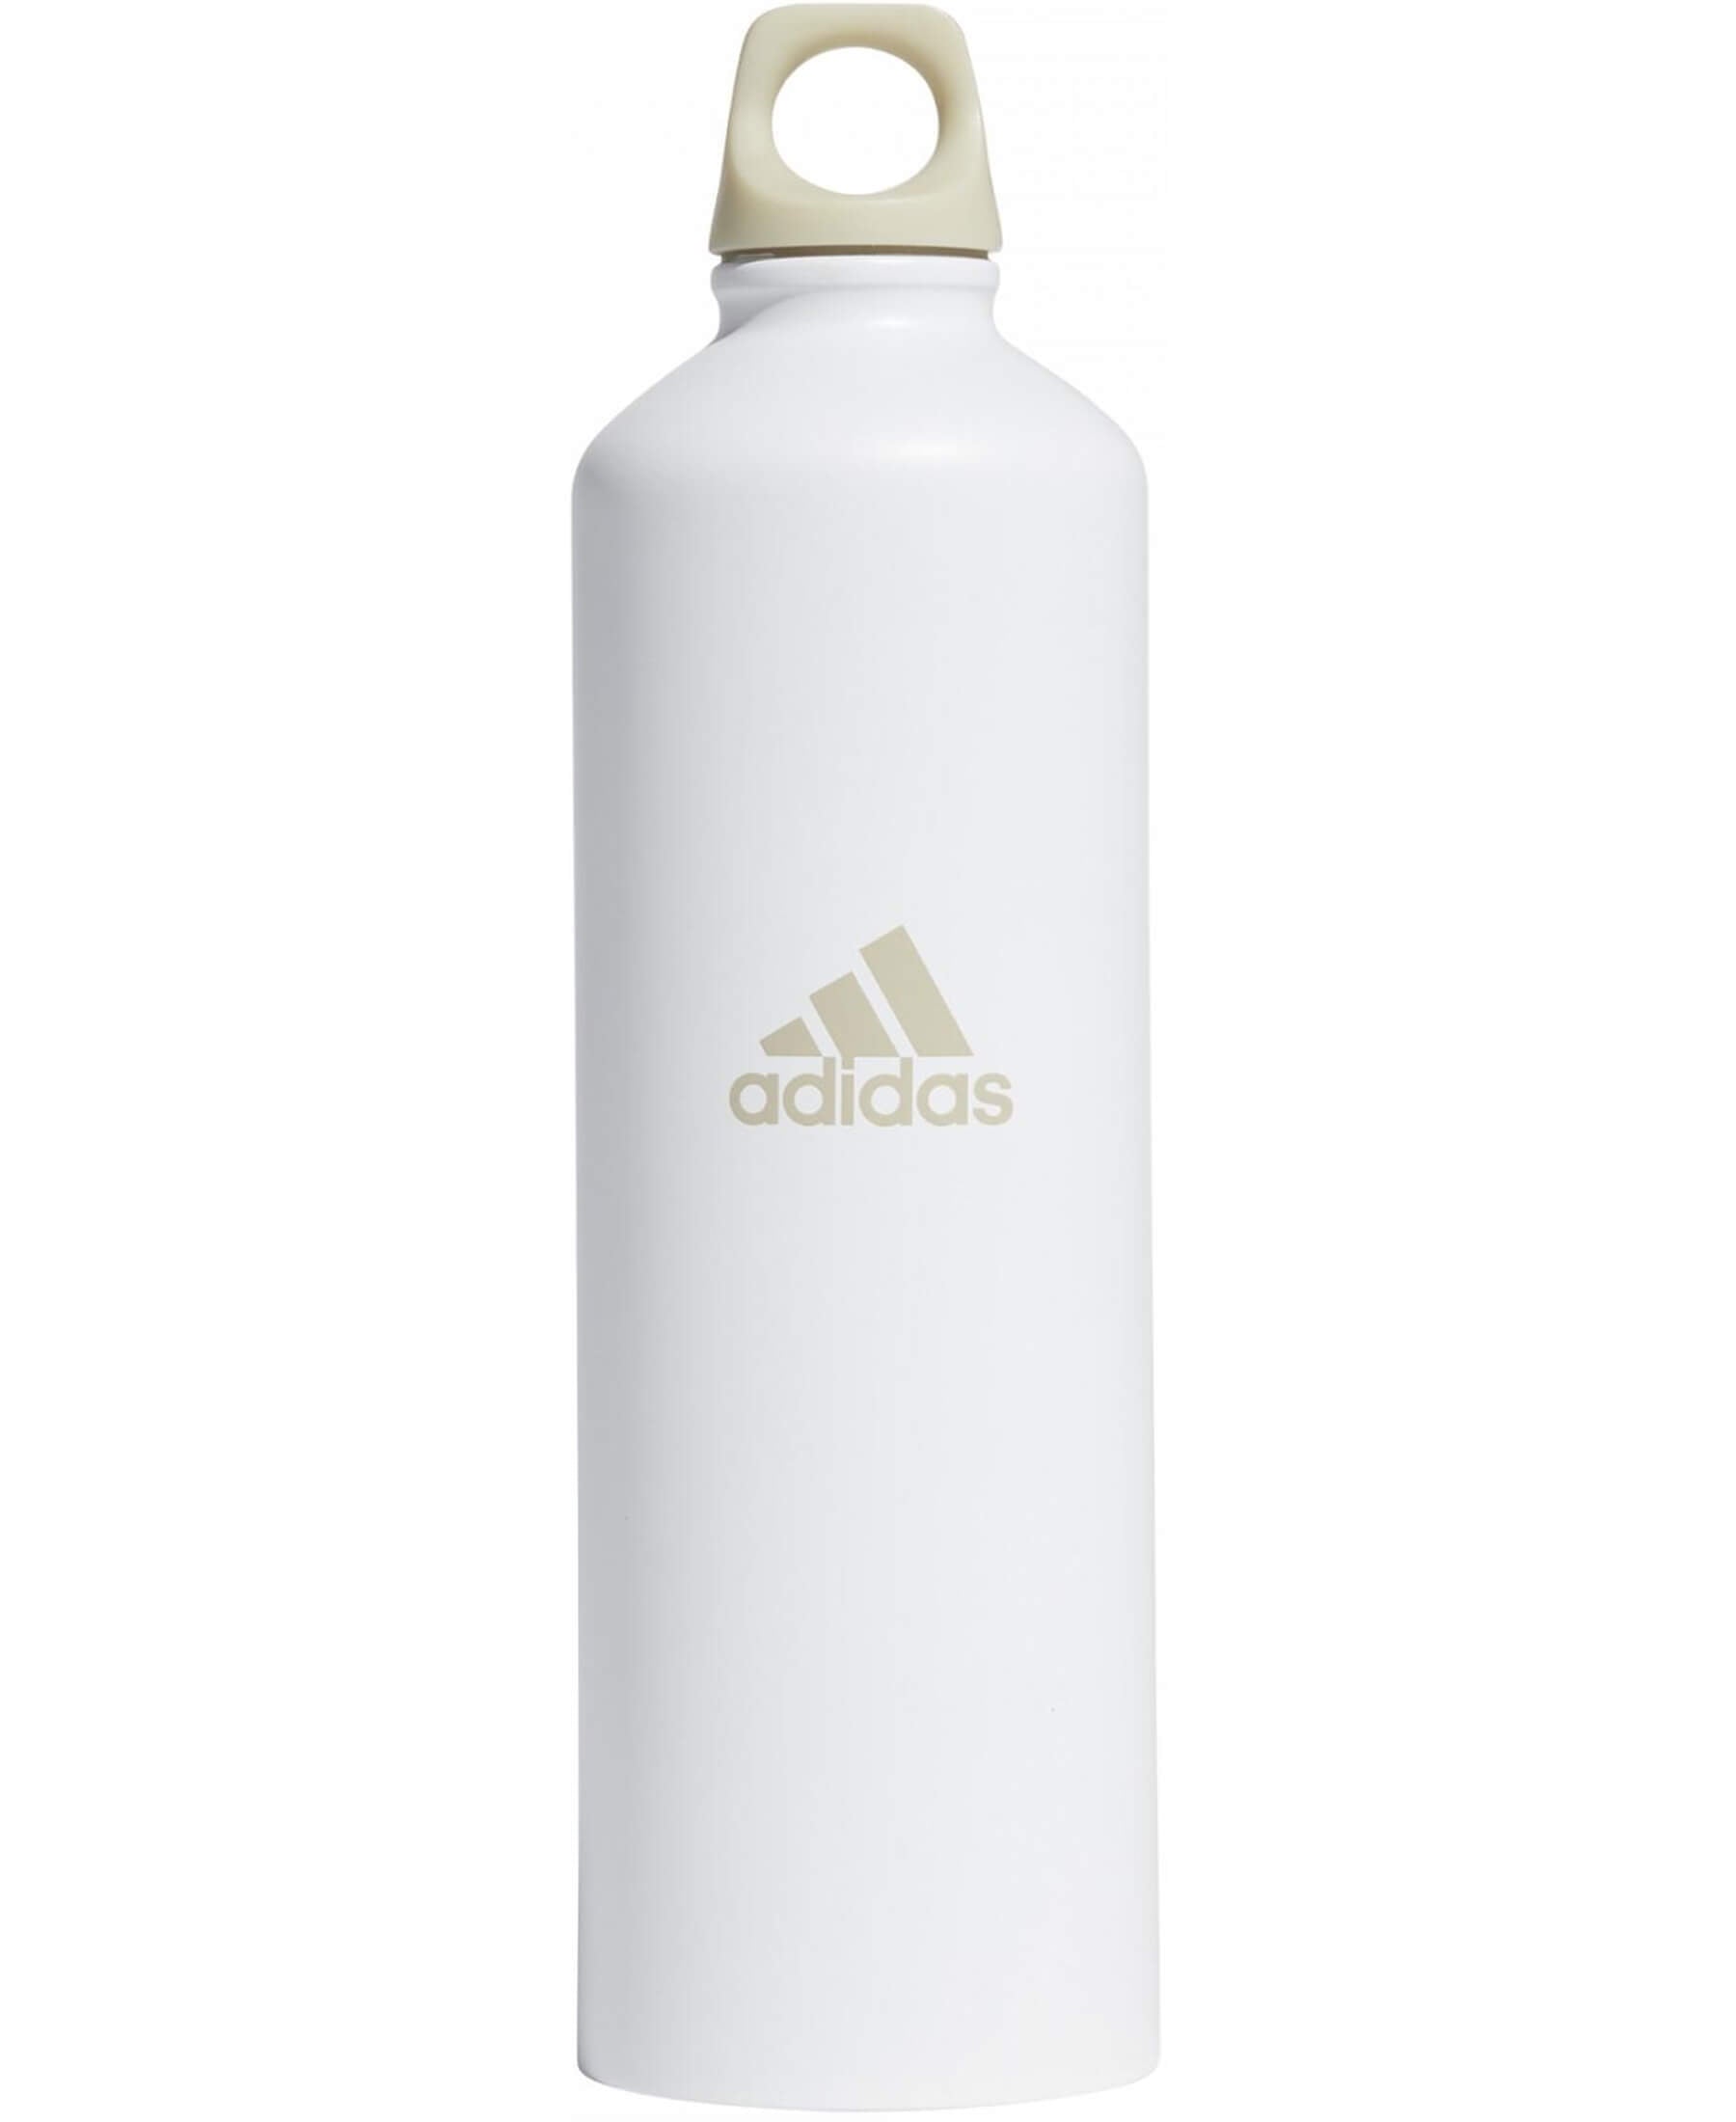 Adidas Steel Bottle 0.75 Metall Trinkflasche GN1878 - Stilvolle und strapazierfähige Trinkflasche von Adidas aus Edelstahl. Mit einem Fassungsvermögen von 0,75 Litern ist sie ideal für den täglichen Gebrauch, Sport und Outdoor-Aktivitäten. Die auslaufsichere Verschlusskappe gewährleistet eine sichere Nutzung. Jetzt bei SHOP4TEAMSPORT erhältlich.